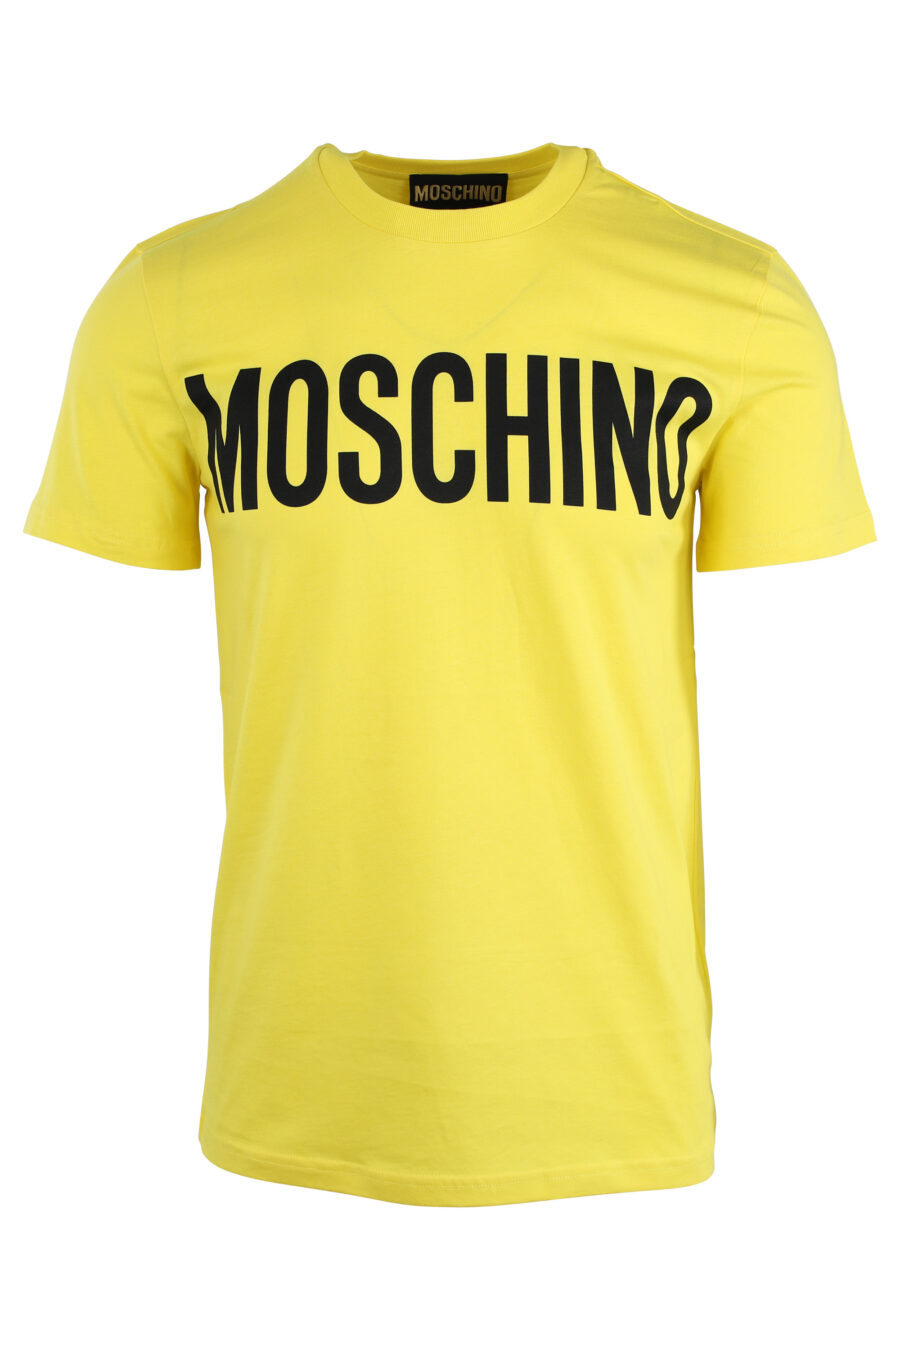 Gelbes T-Shirt mit schwarzem Maxilogo - IMG 1659